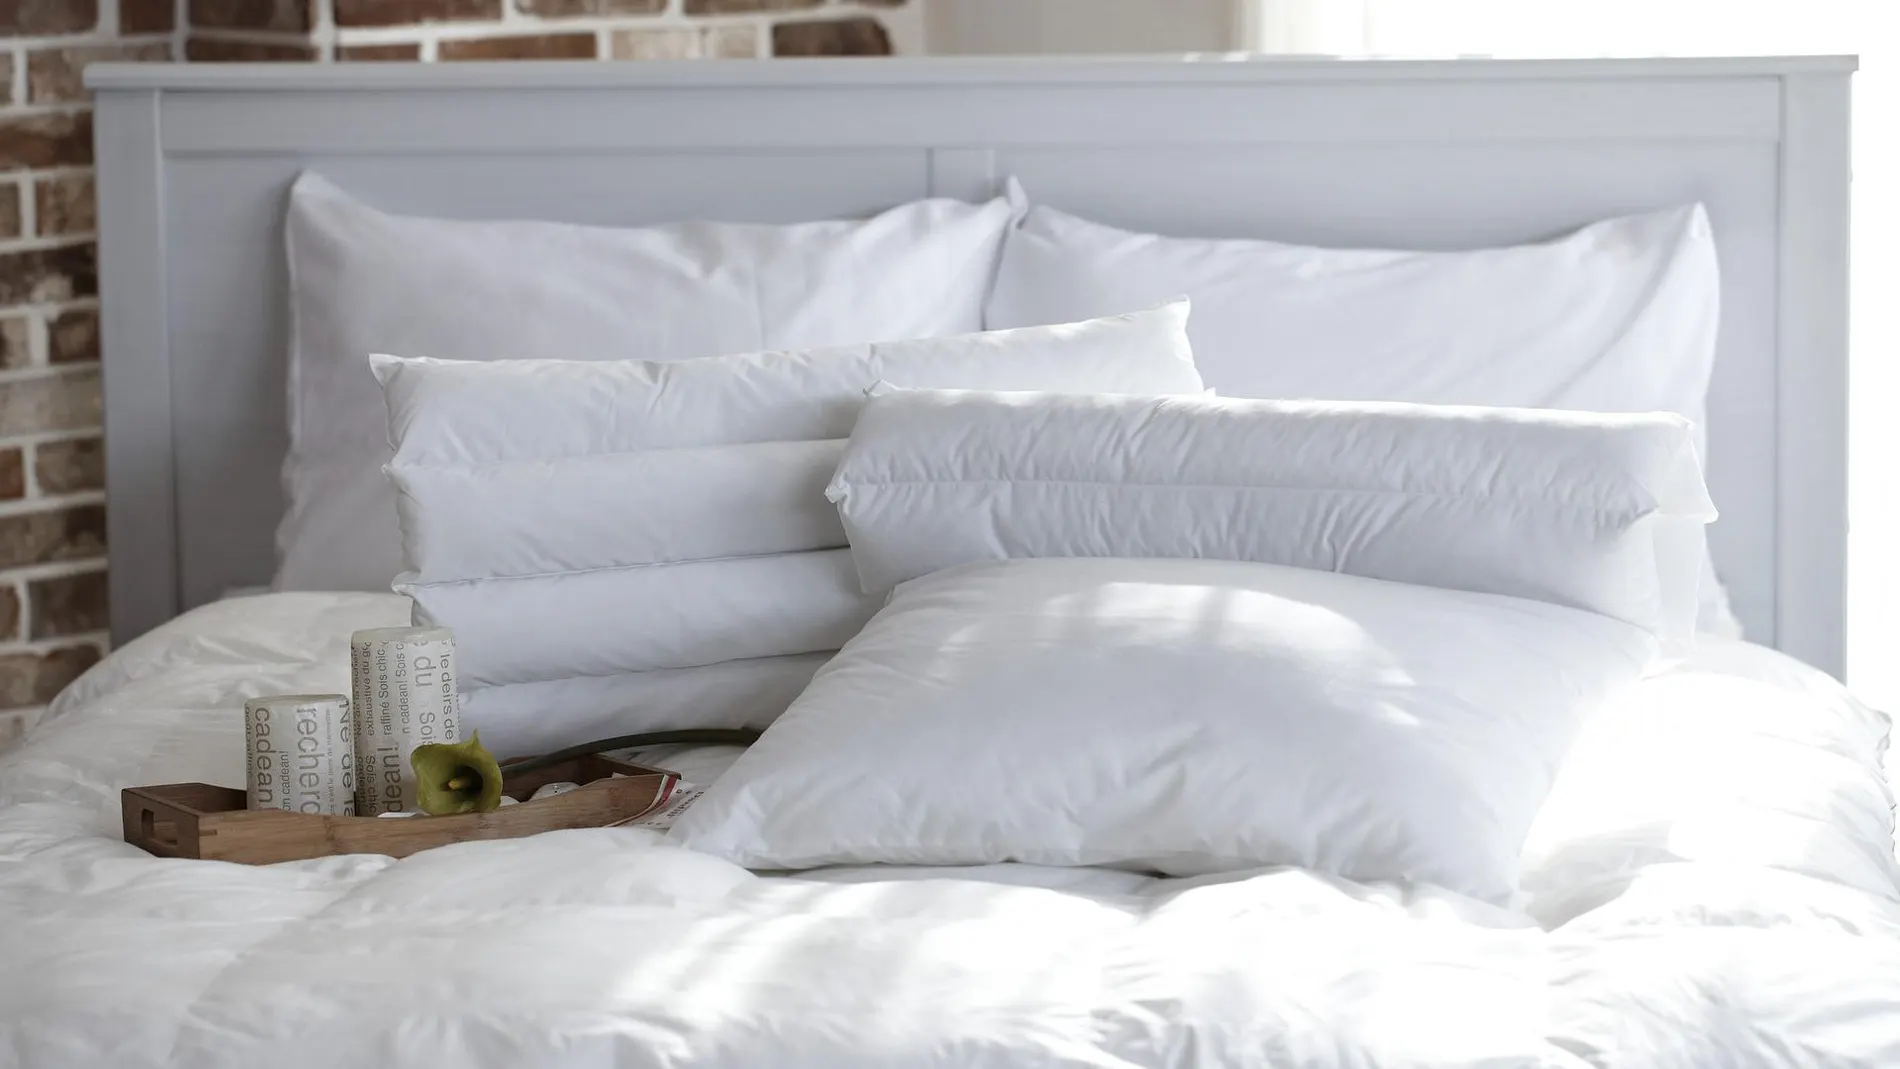 Para una limpieza adecuada, conviene lavar las almohadas de forma regular para eliminar el polvo y los ácaros acumulados